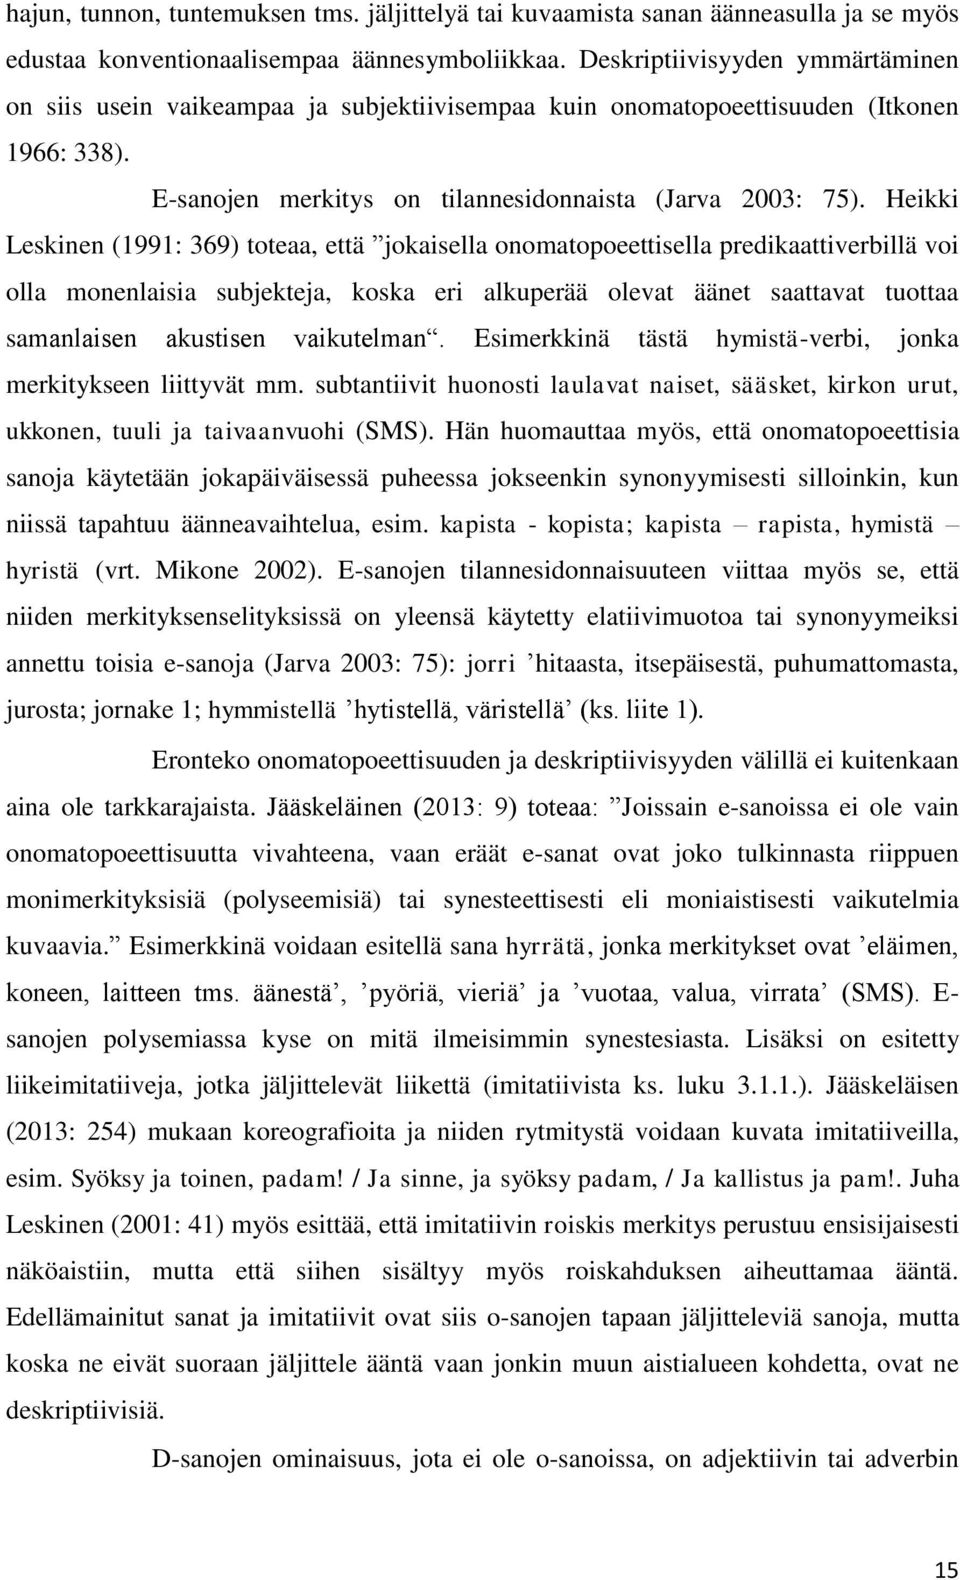 Heikki Leskinen (1991: 369) toteaa, että jokaisella onomatopoeettisella predikaattiverbillä voi olla monenlaisia subjekteja, koska eri alkuperää olevat äänet saattavat tuottaa samanlaisen akustisen